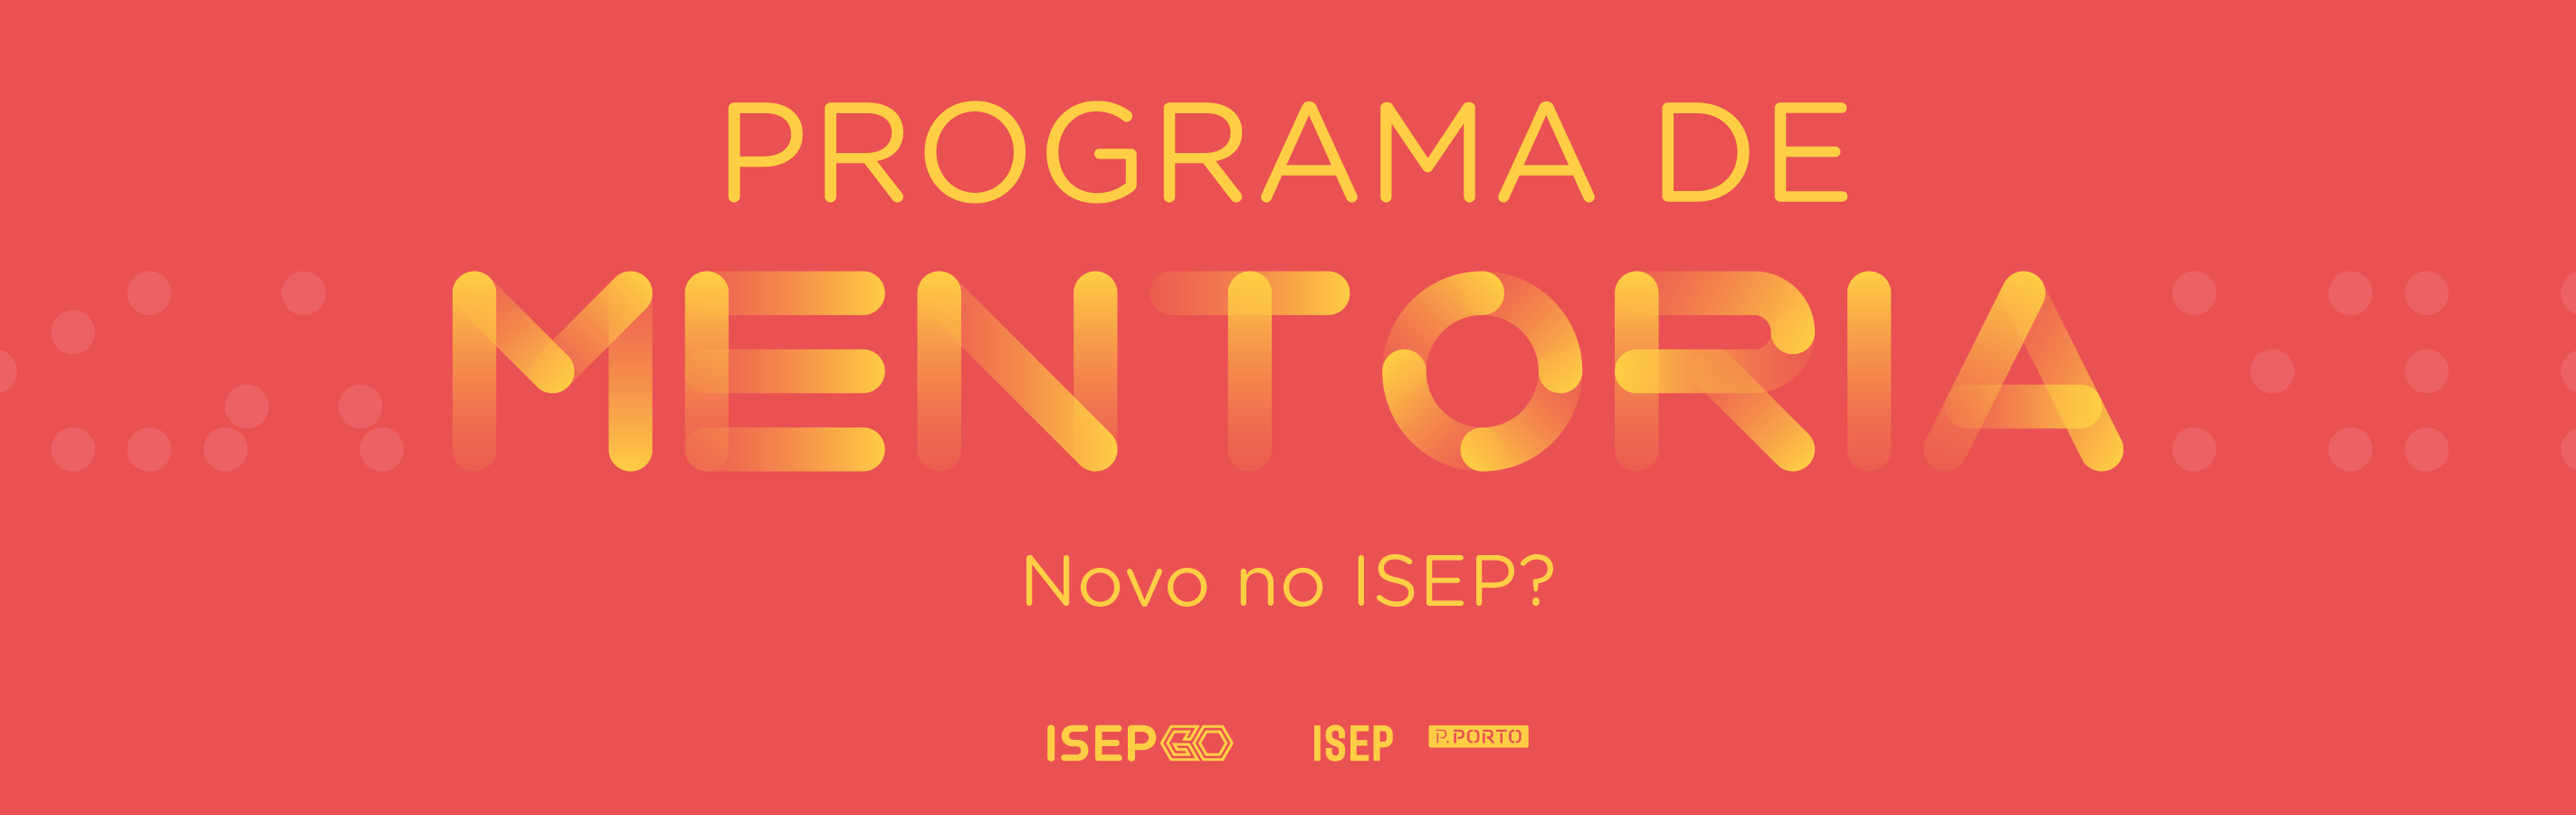 Programa de Mentoria para novos estudantes no ISEP